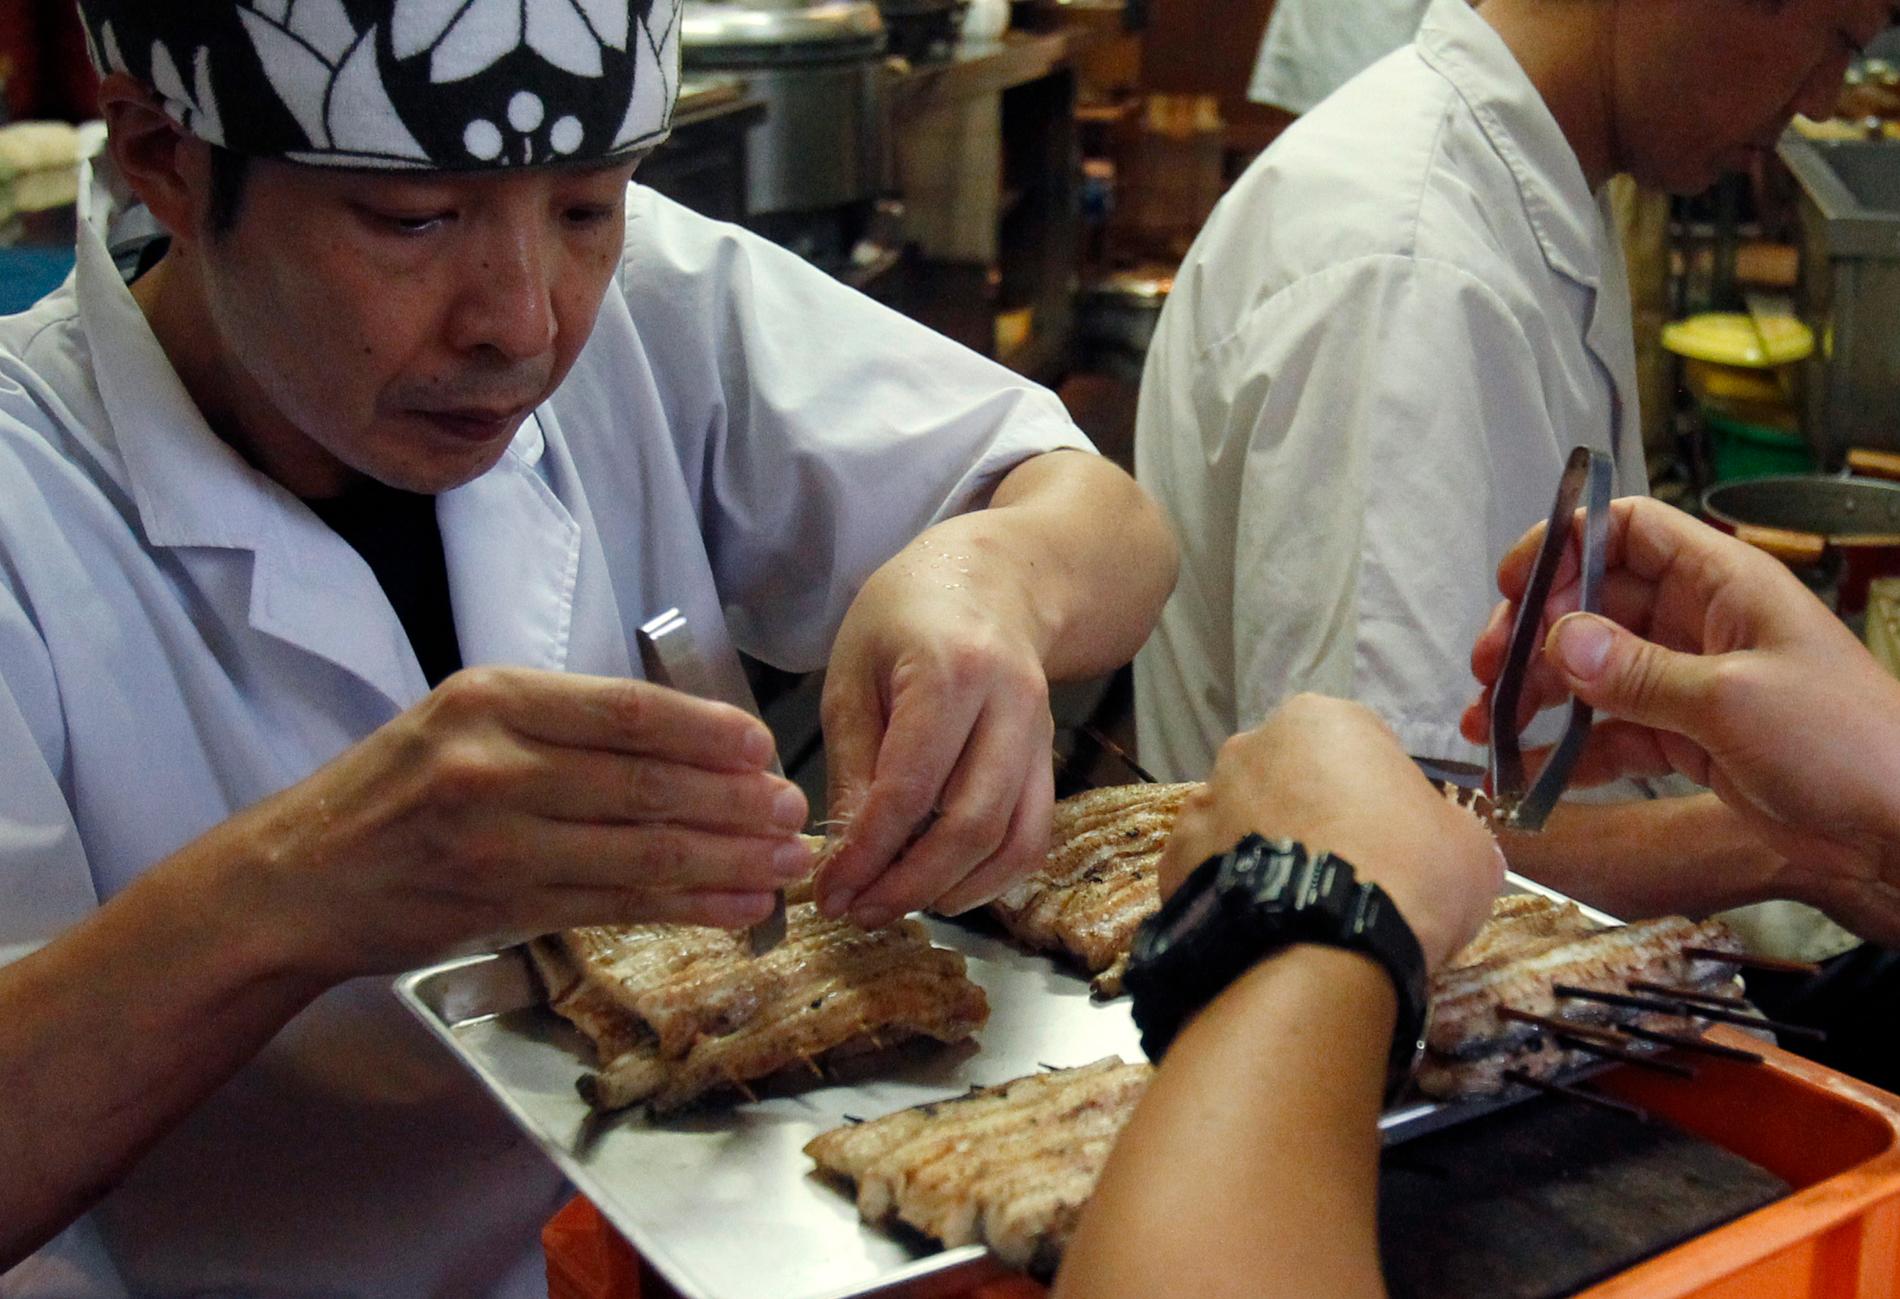 Arbetare på den japanska lyxrestaurangen Hashimoto rensar europeisk ål innan det är dags för grillning. Europeisk ål är en delikatess i Japan vars egna bestånd av japansk ål är mer eller mindre utfiskat. Där anses den europeiska ålen vara både en delikatess och en fisk som ökar fertiliteten. Arkivbild.